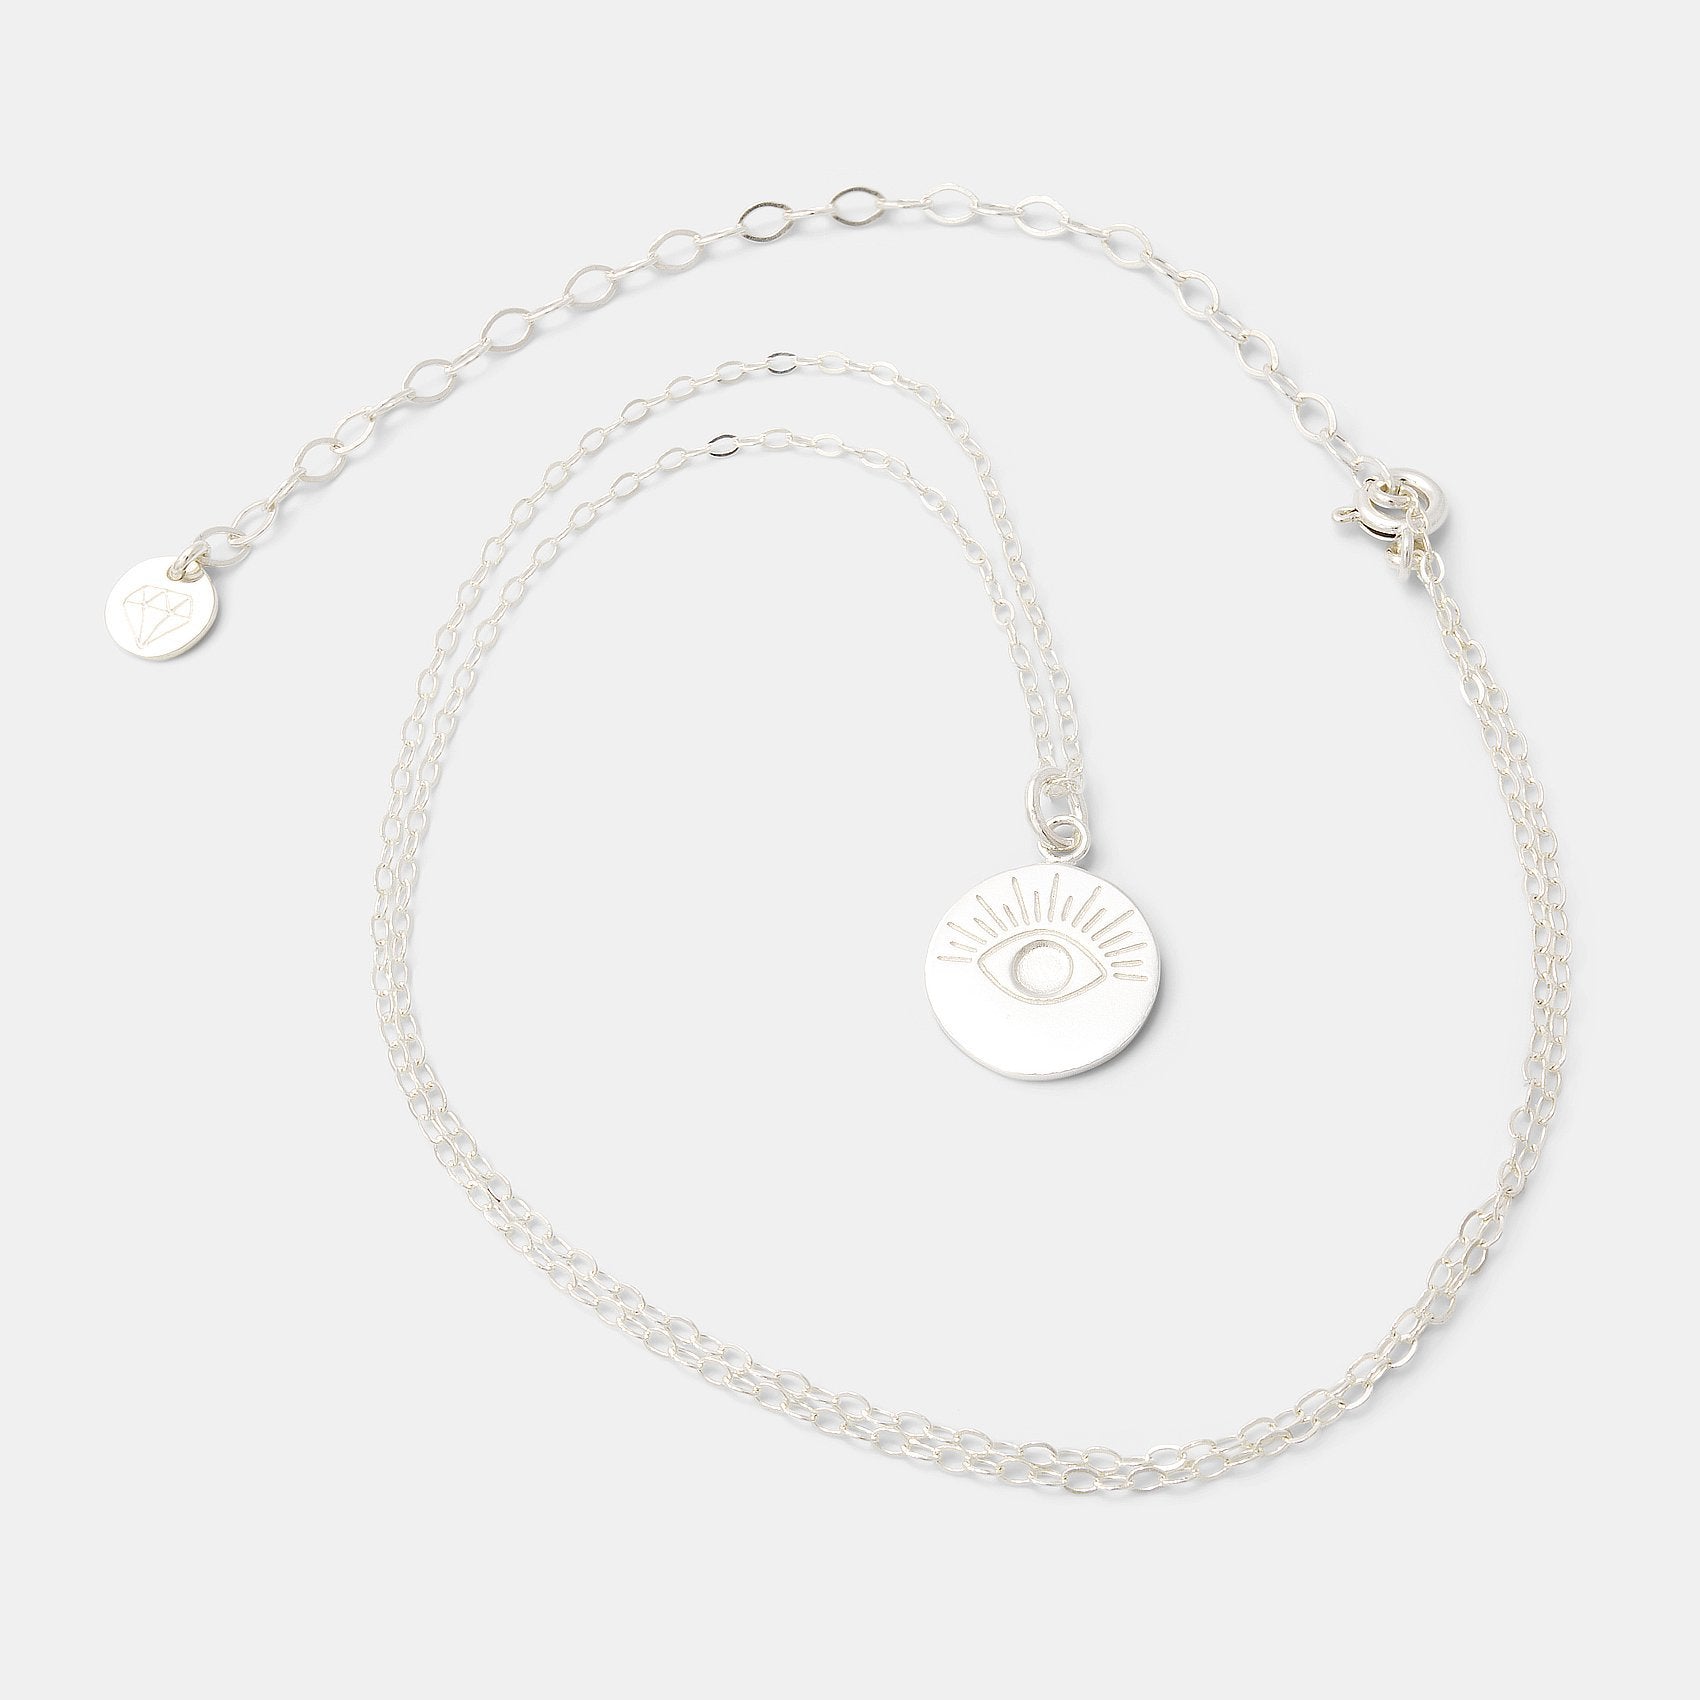 Eye amulet necklace - Simone Walsh Jewellery Australia